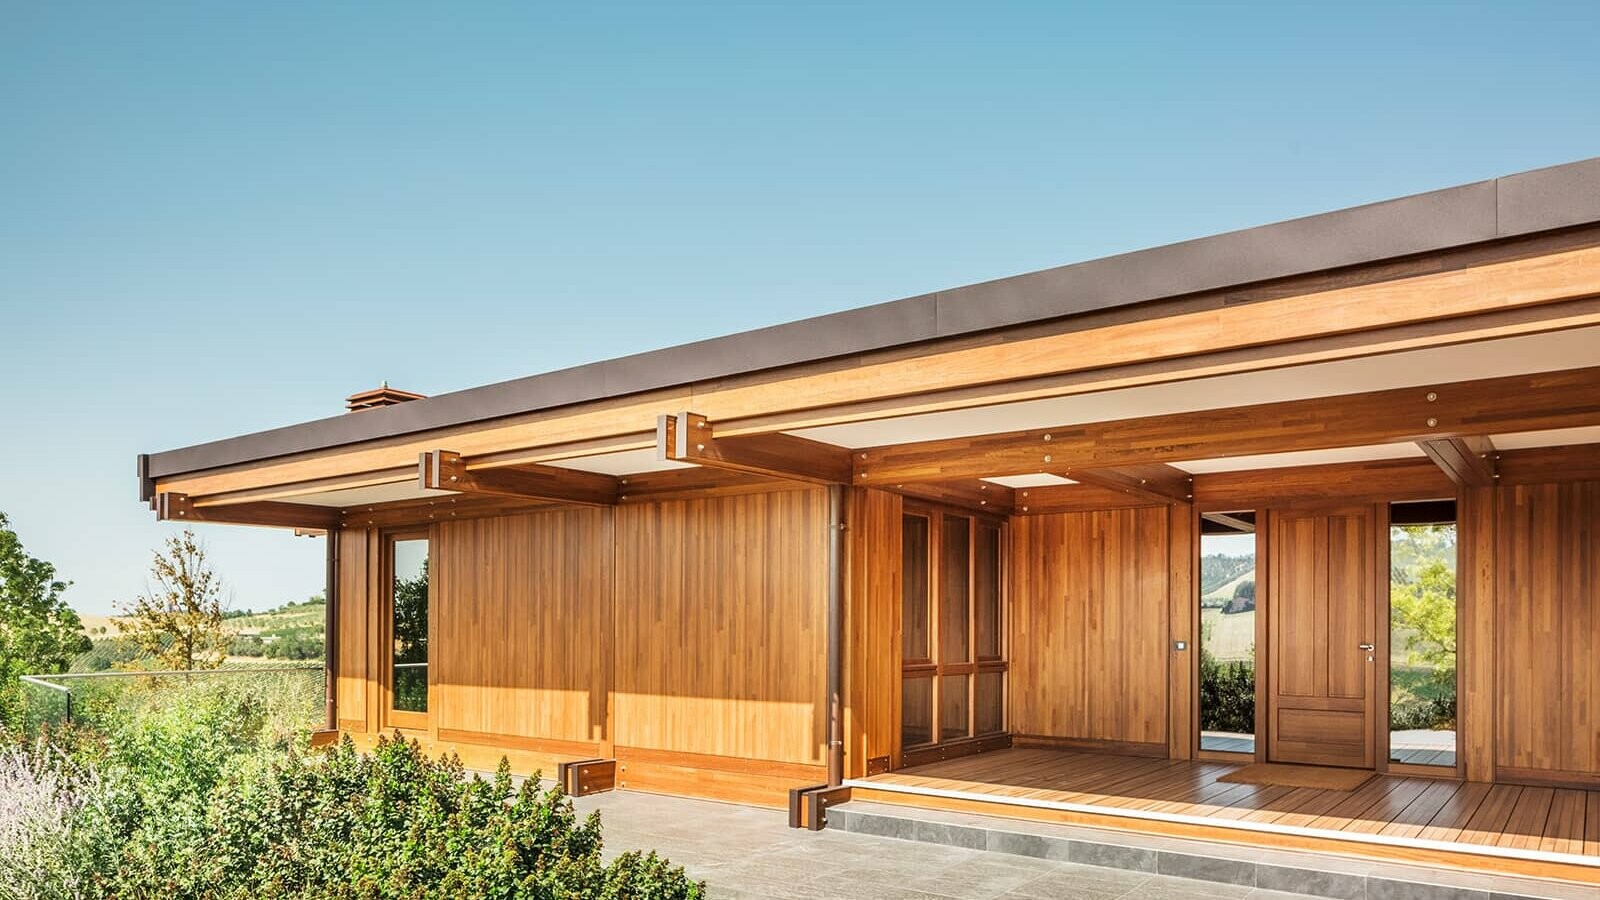 Das Musterhaus von Pagano. Das Dach ist mit Prefalz in der Farbe Nussbraun eingedeckt, der Rest des Hauses ist aus Holz gefertigt.